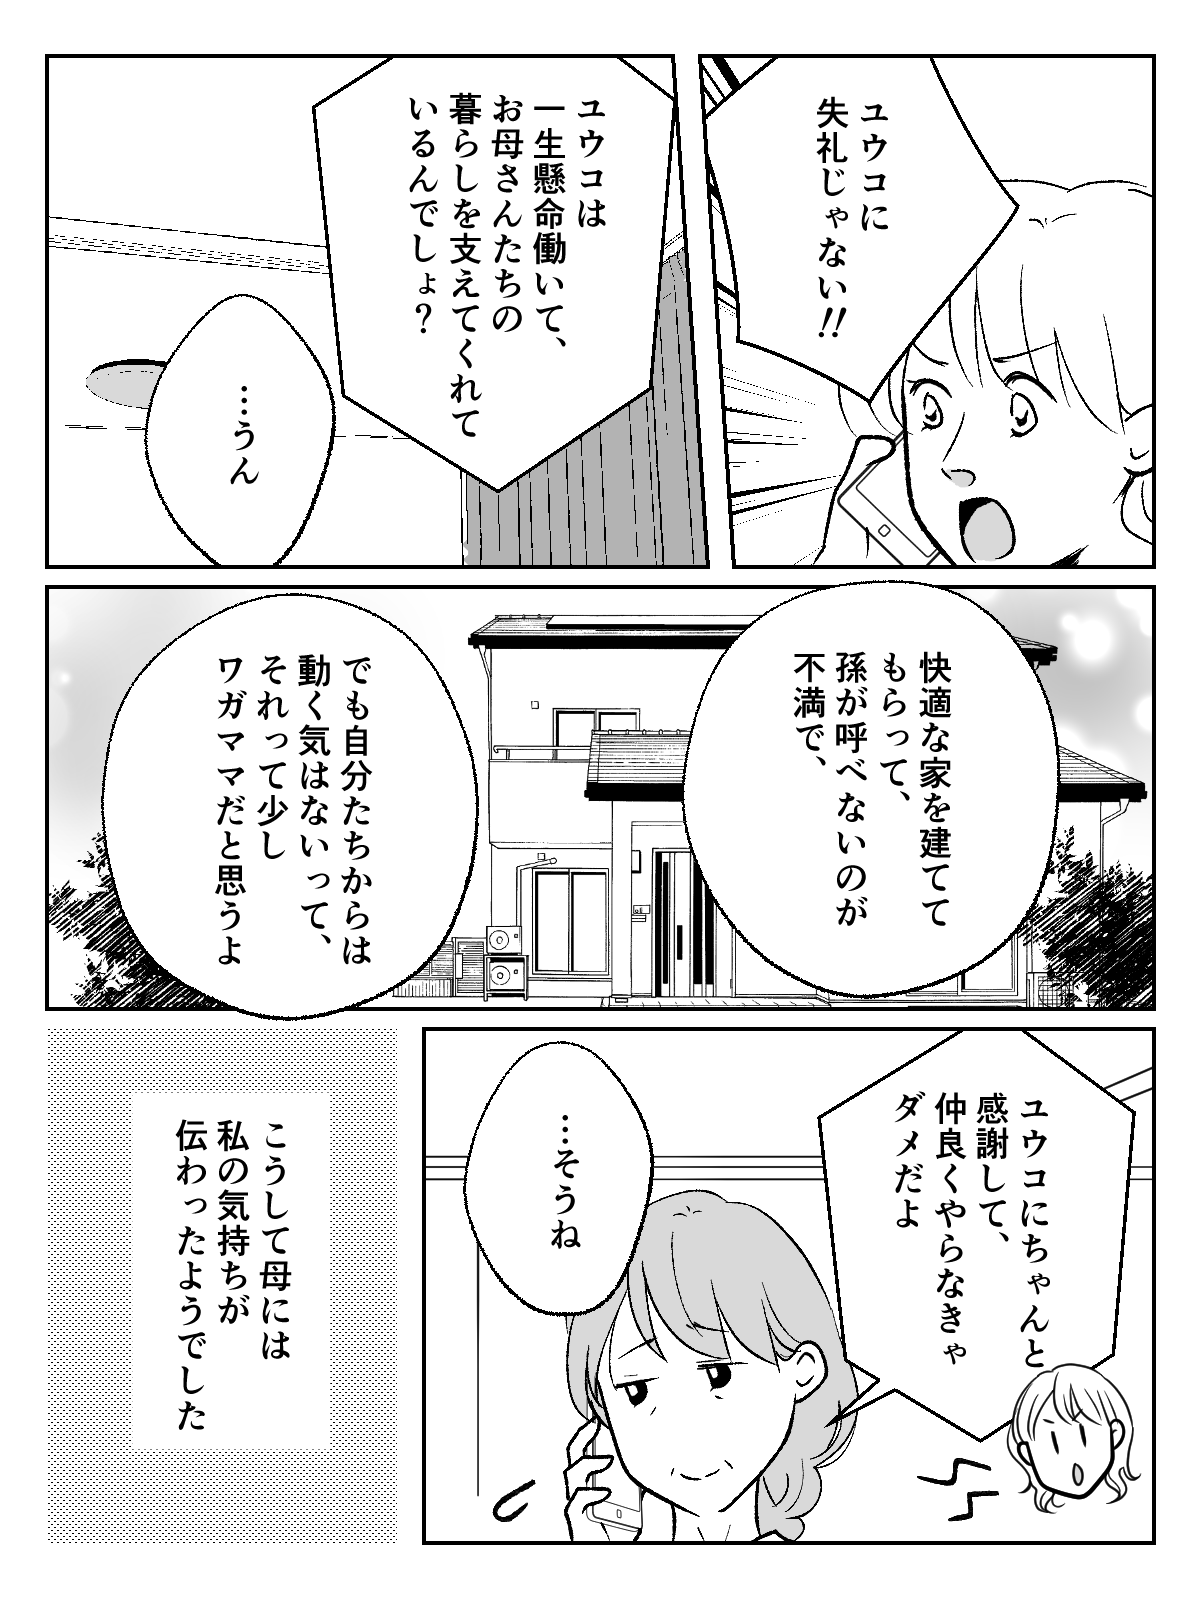 コミック005_002 (2)